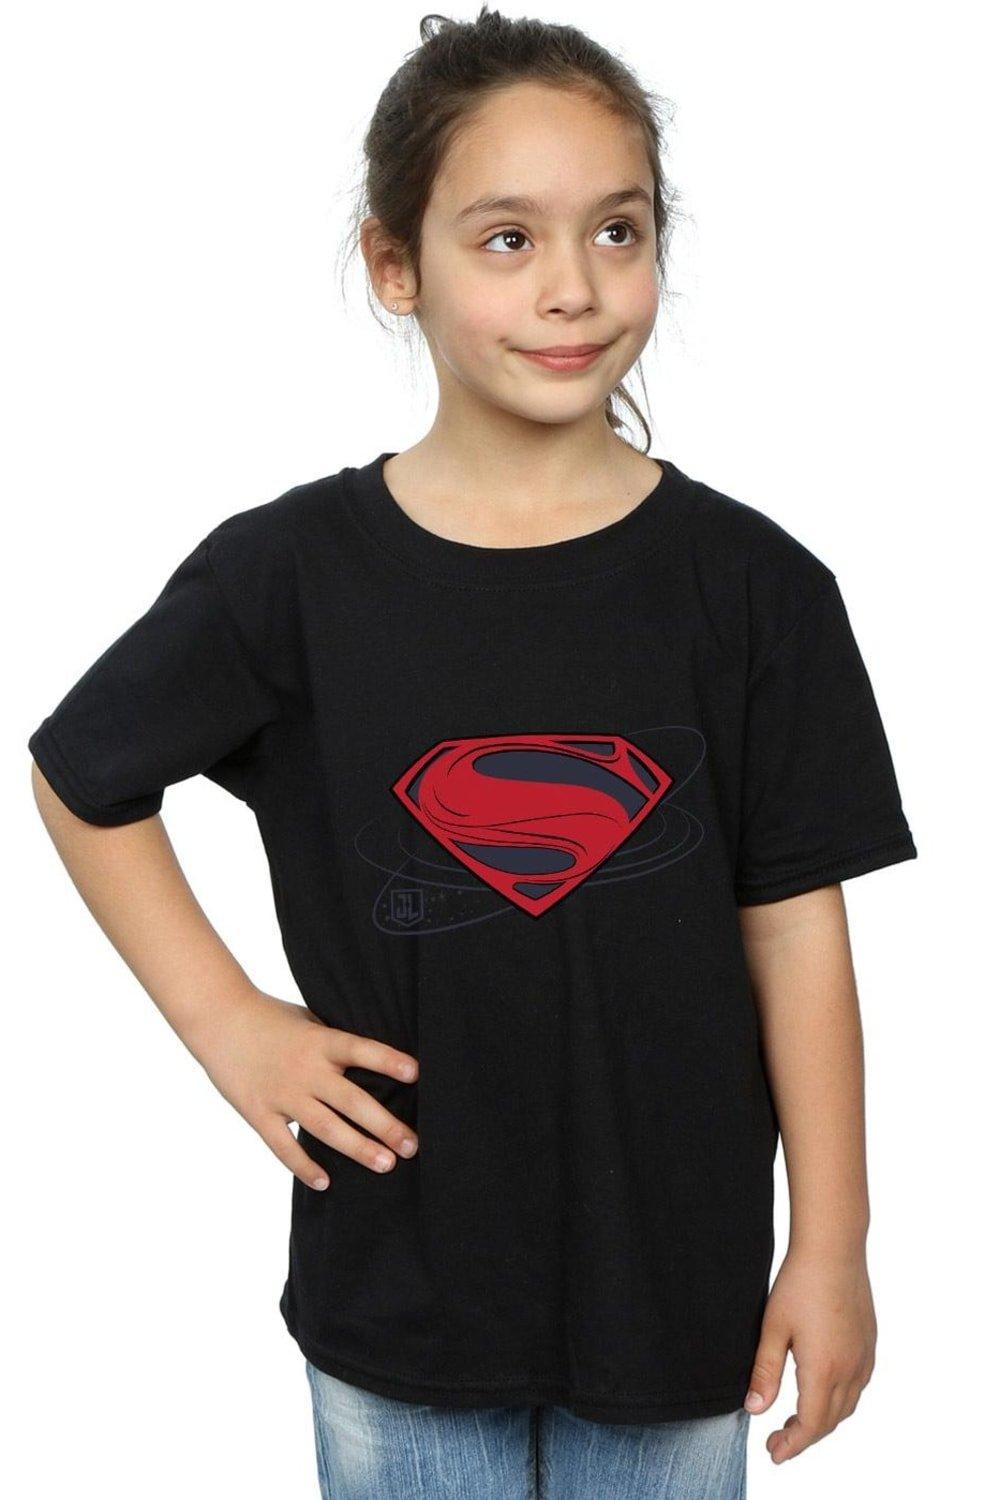 Justice League Movie Superman Logo Cotton T-Shirt